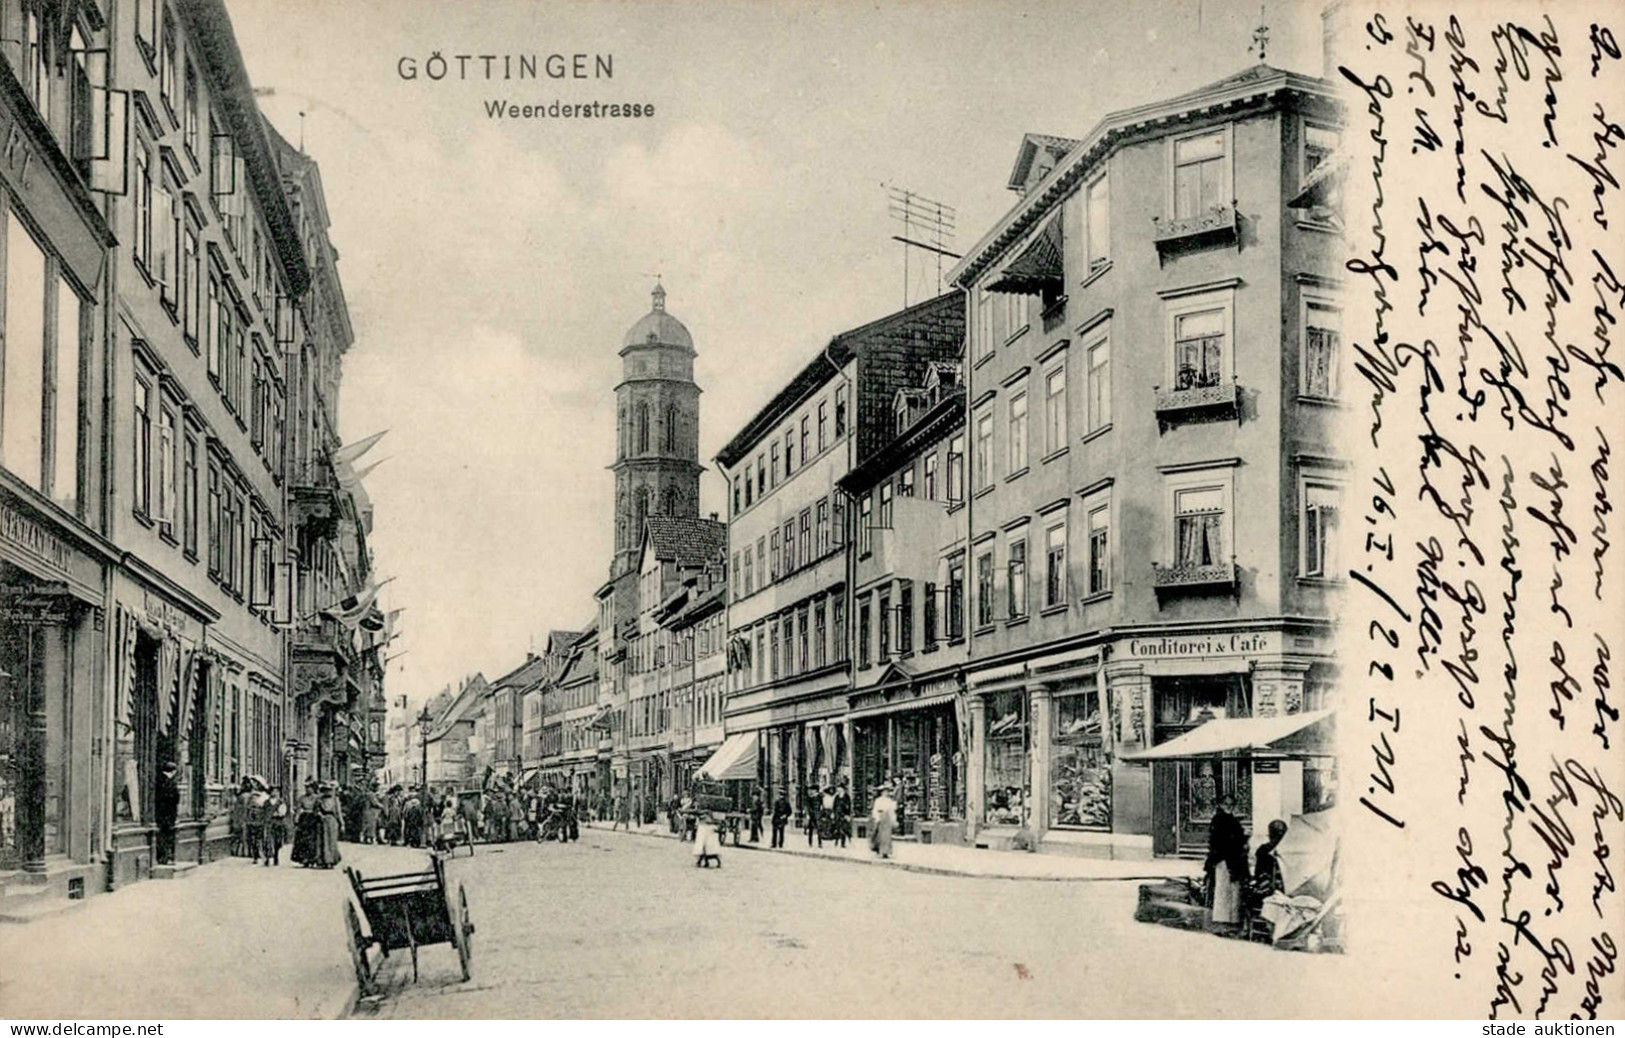 Göttingen (3400) Weenderstrasse Conditorei Cafe Kirche 1911 I-II - Goettingen